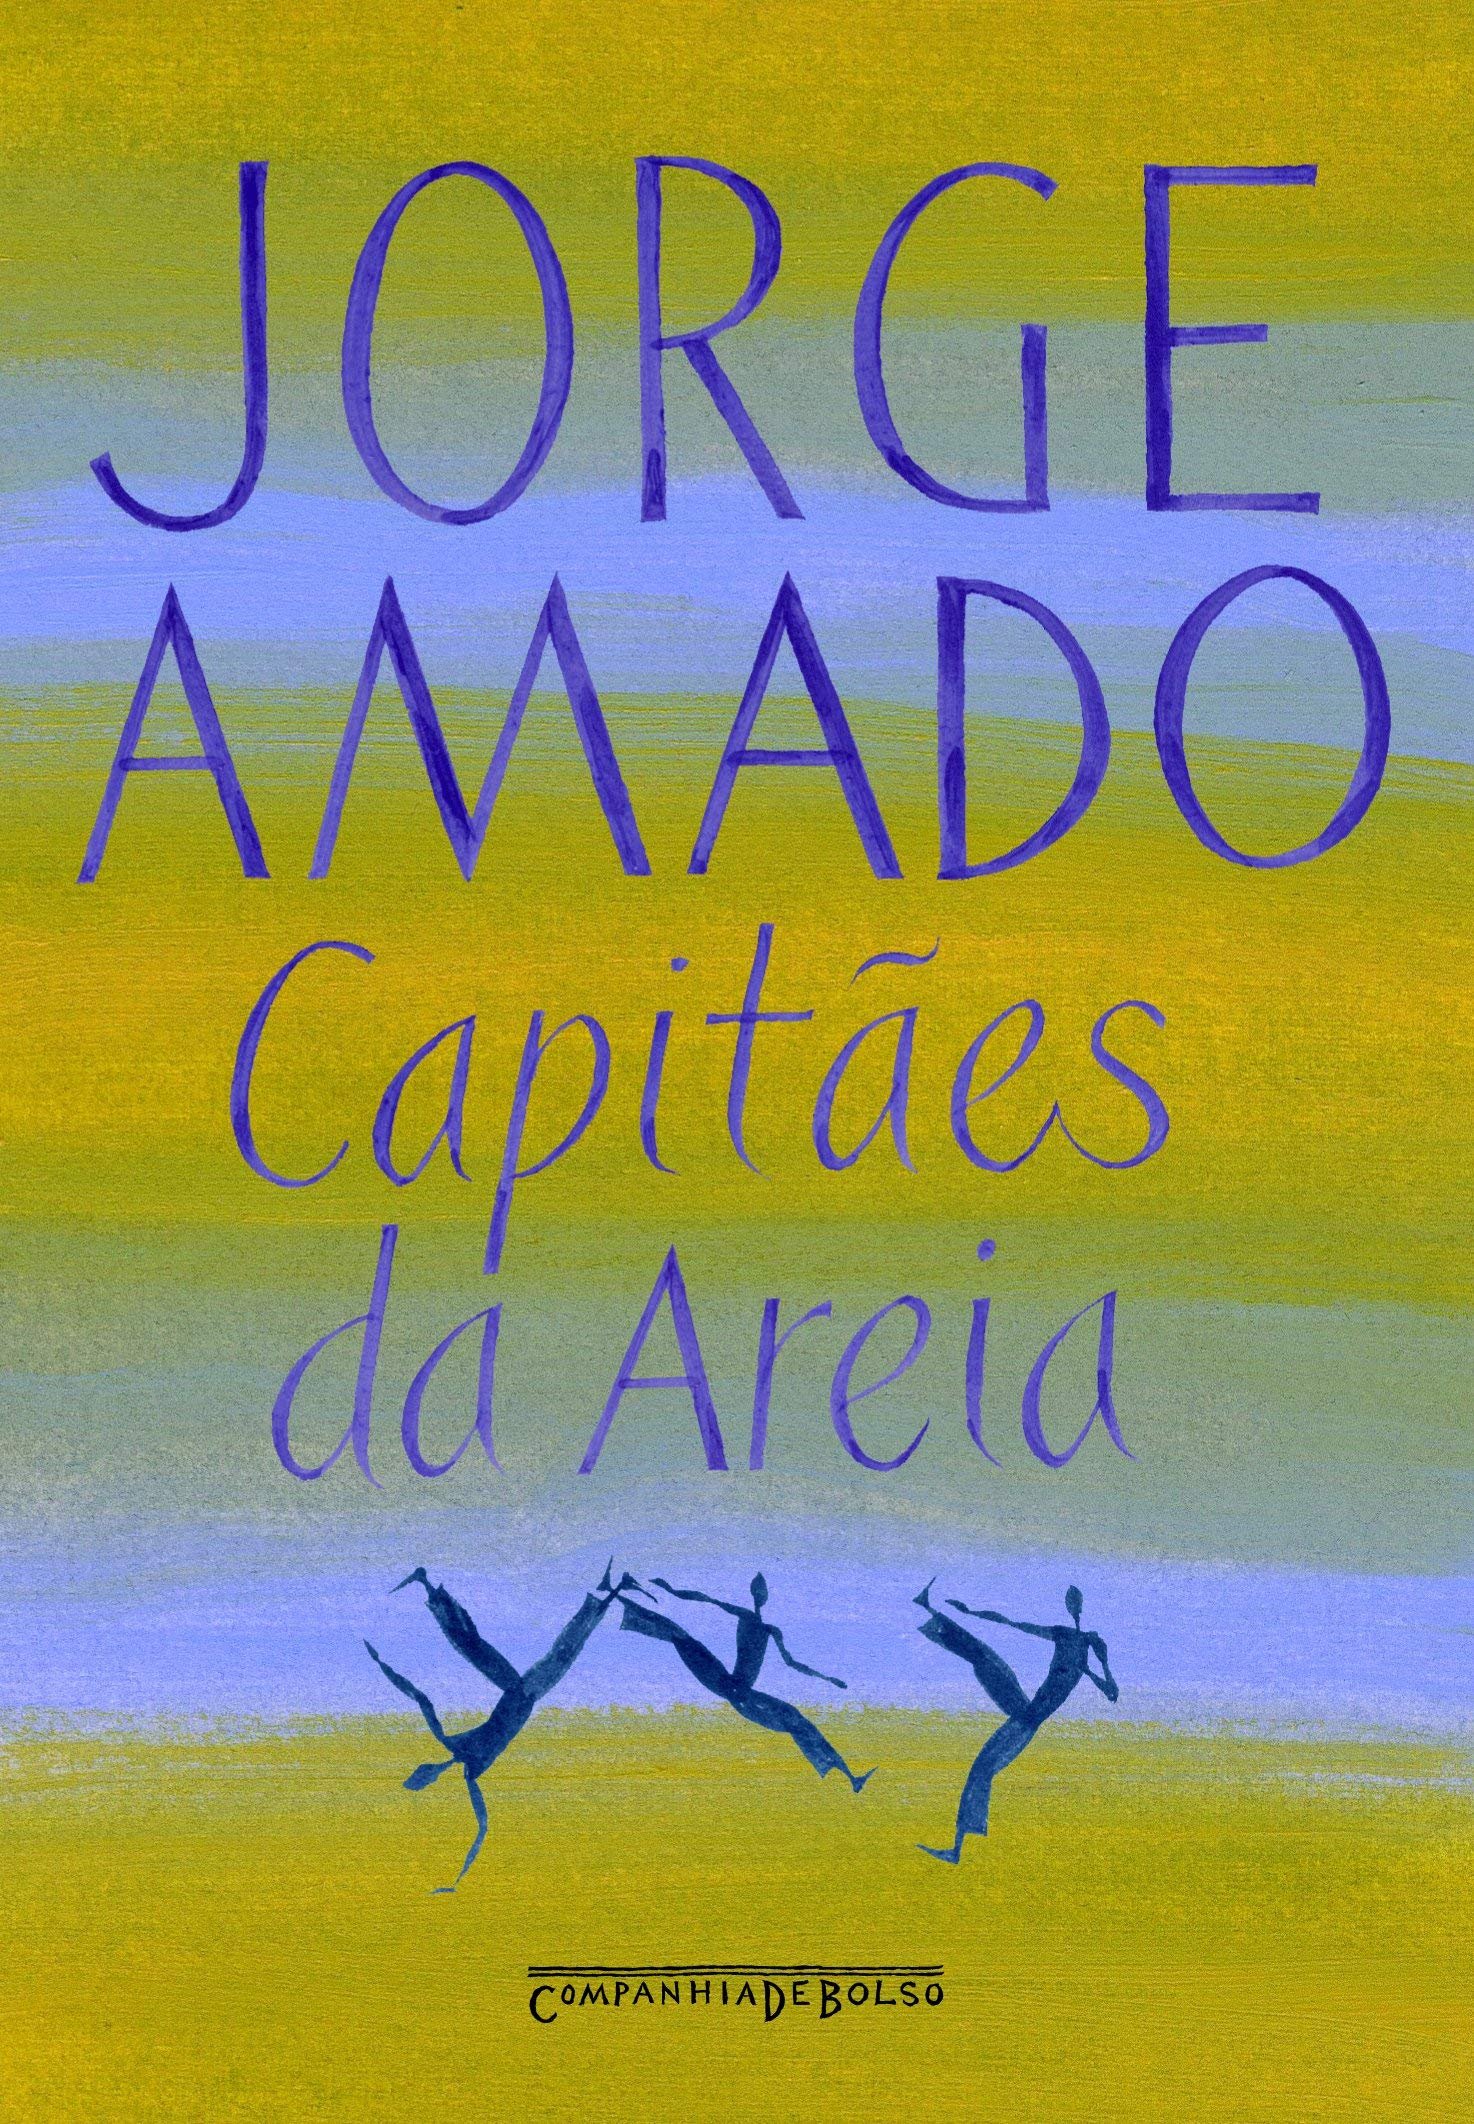 Capa do livro 'Capitães de Areia'.